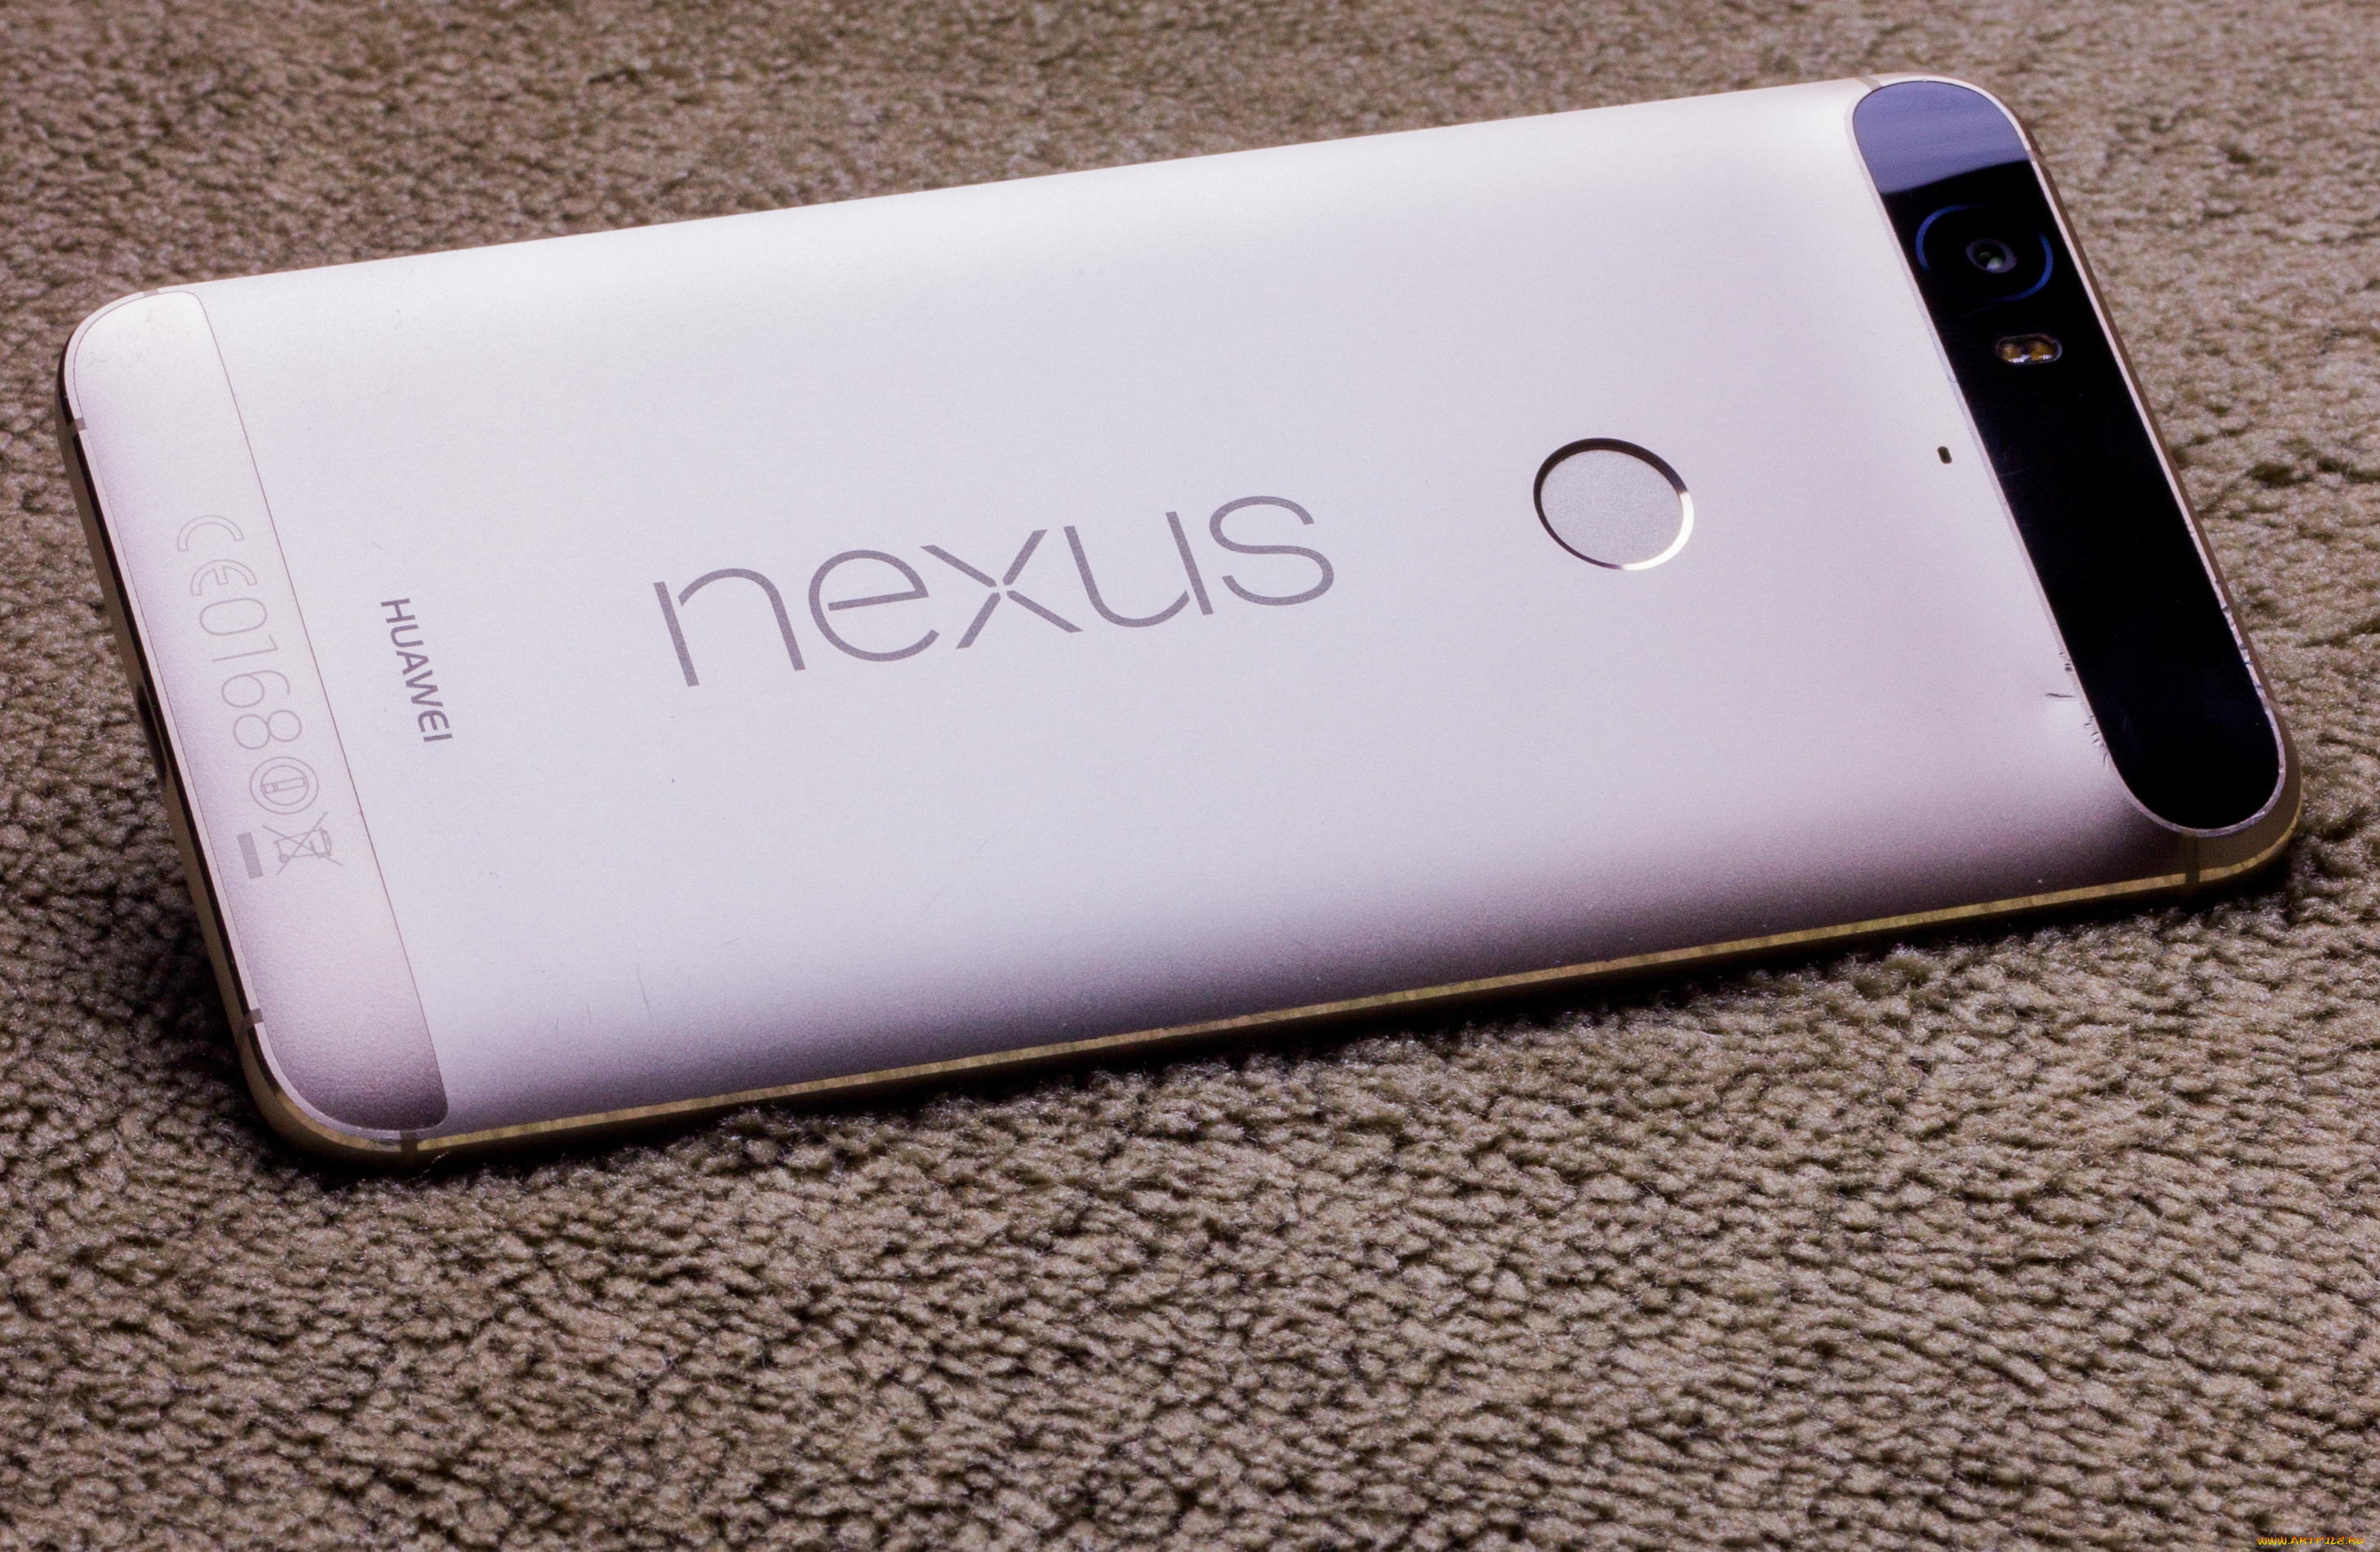 huawei, nexus, 6p, бренды, -, другое, смартфон, android, phone, nexus, marshmallow, 6p, huawei